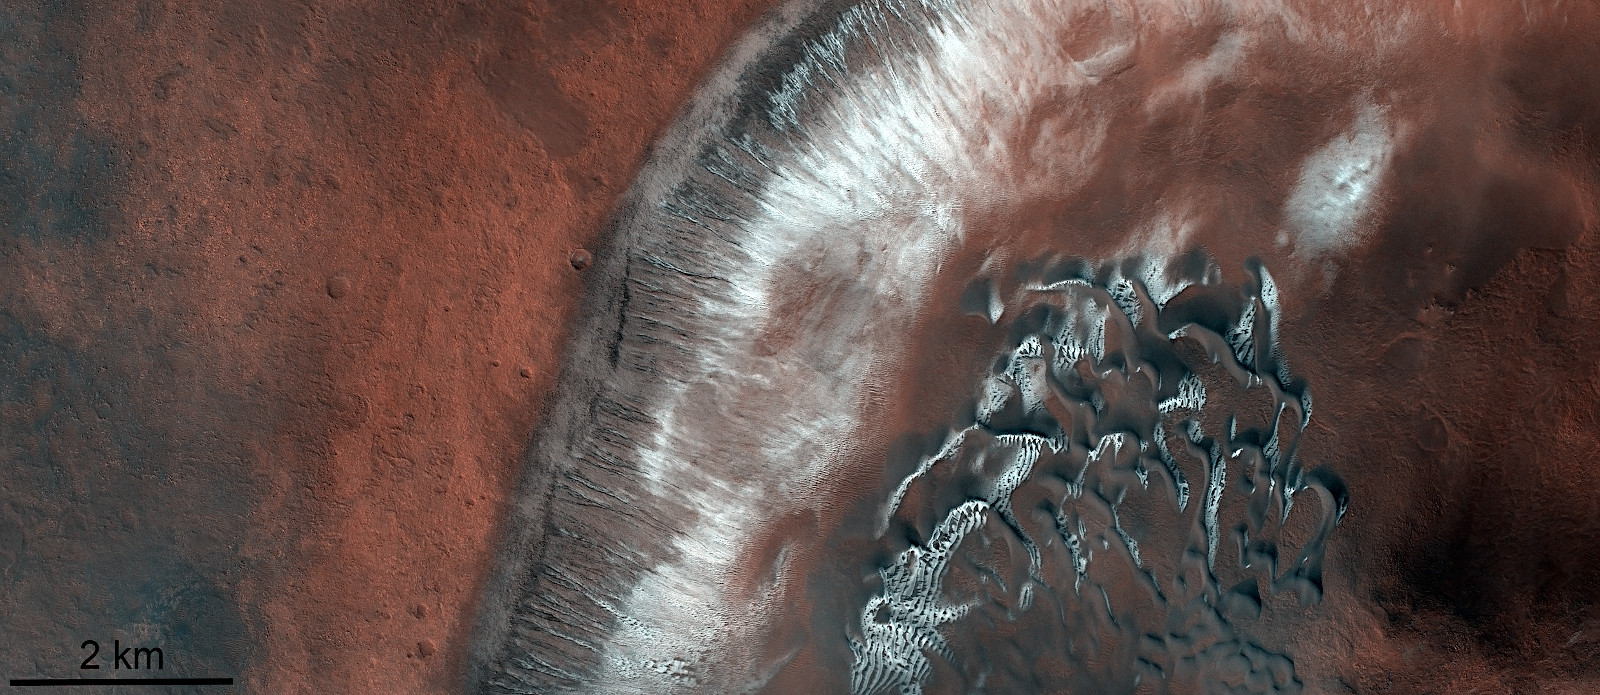 火星の春 クレーター北側の壁に残った氷 アストロピクス